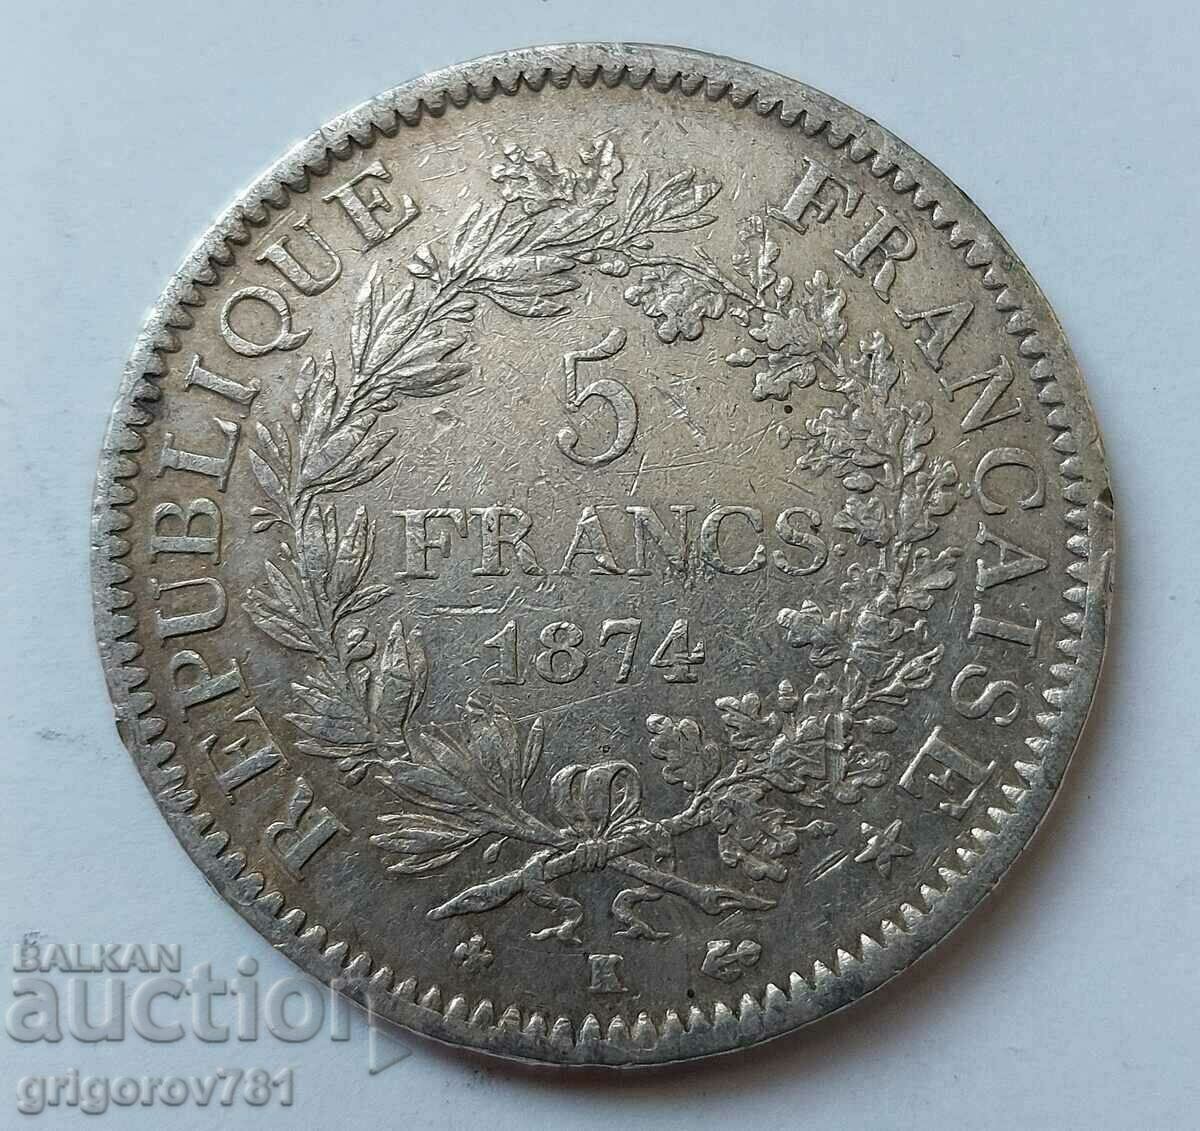 5 Franci Argint Franta 1874 K - Moneda de argint #80